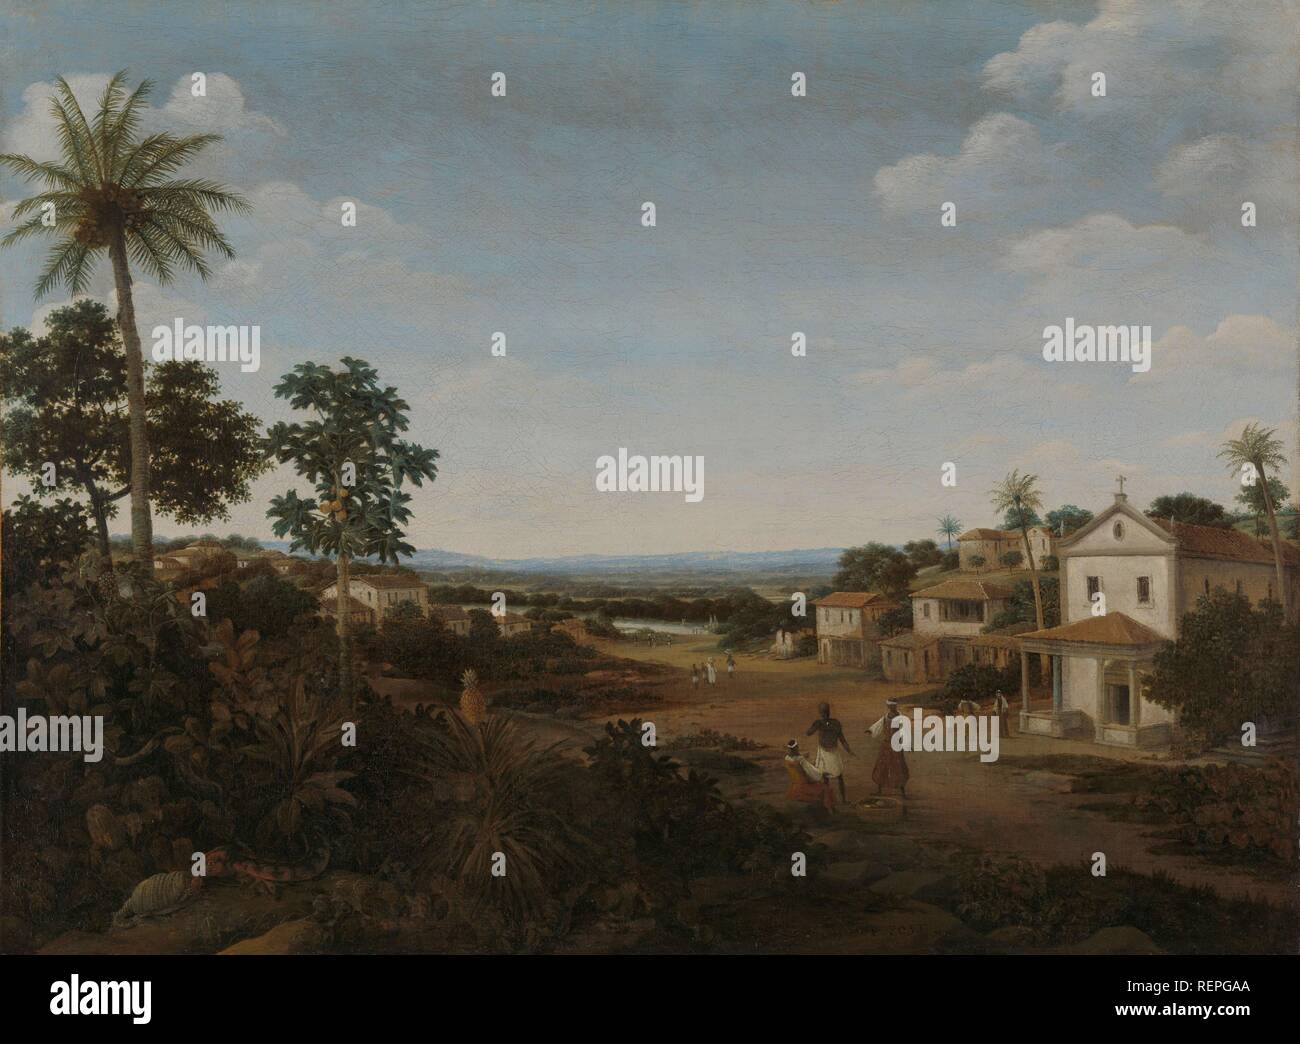 Paesaggio in Brasile. Dating: c. 1665 - c. 1669. Misurazioni: h 66 cm × W 88 cm; d 9.1 cm. Museo: Rijksmuseum Amsterdam. Autore: FRANS JANSZ POST. Foto Stock